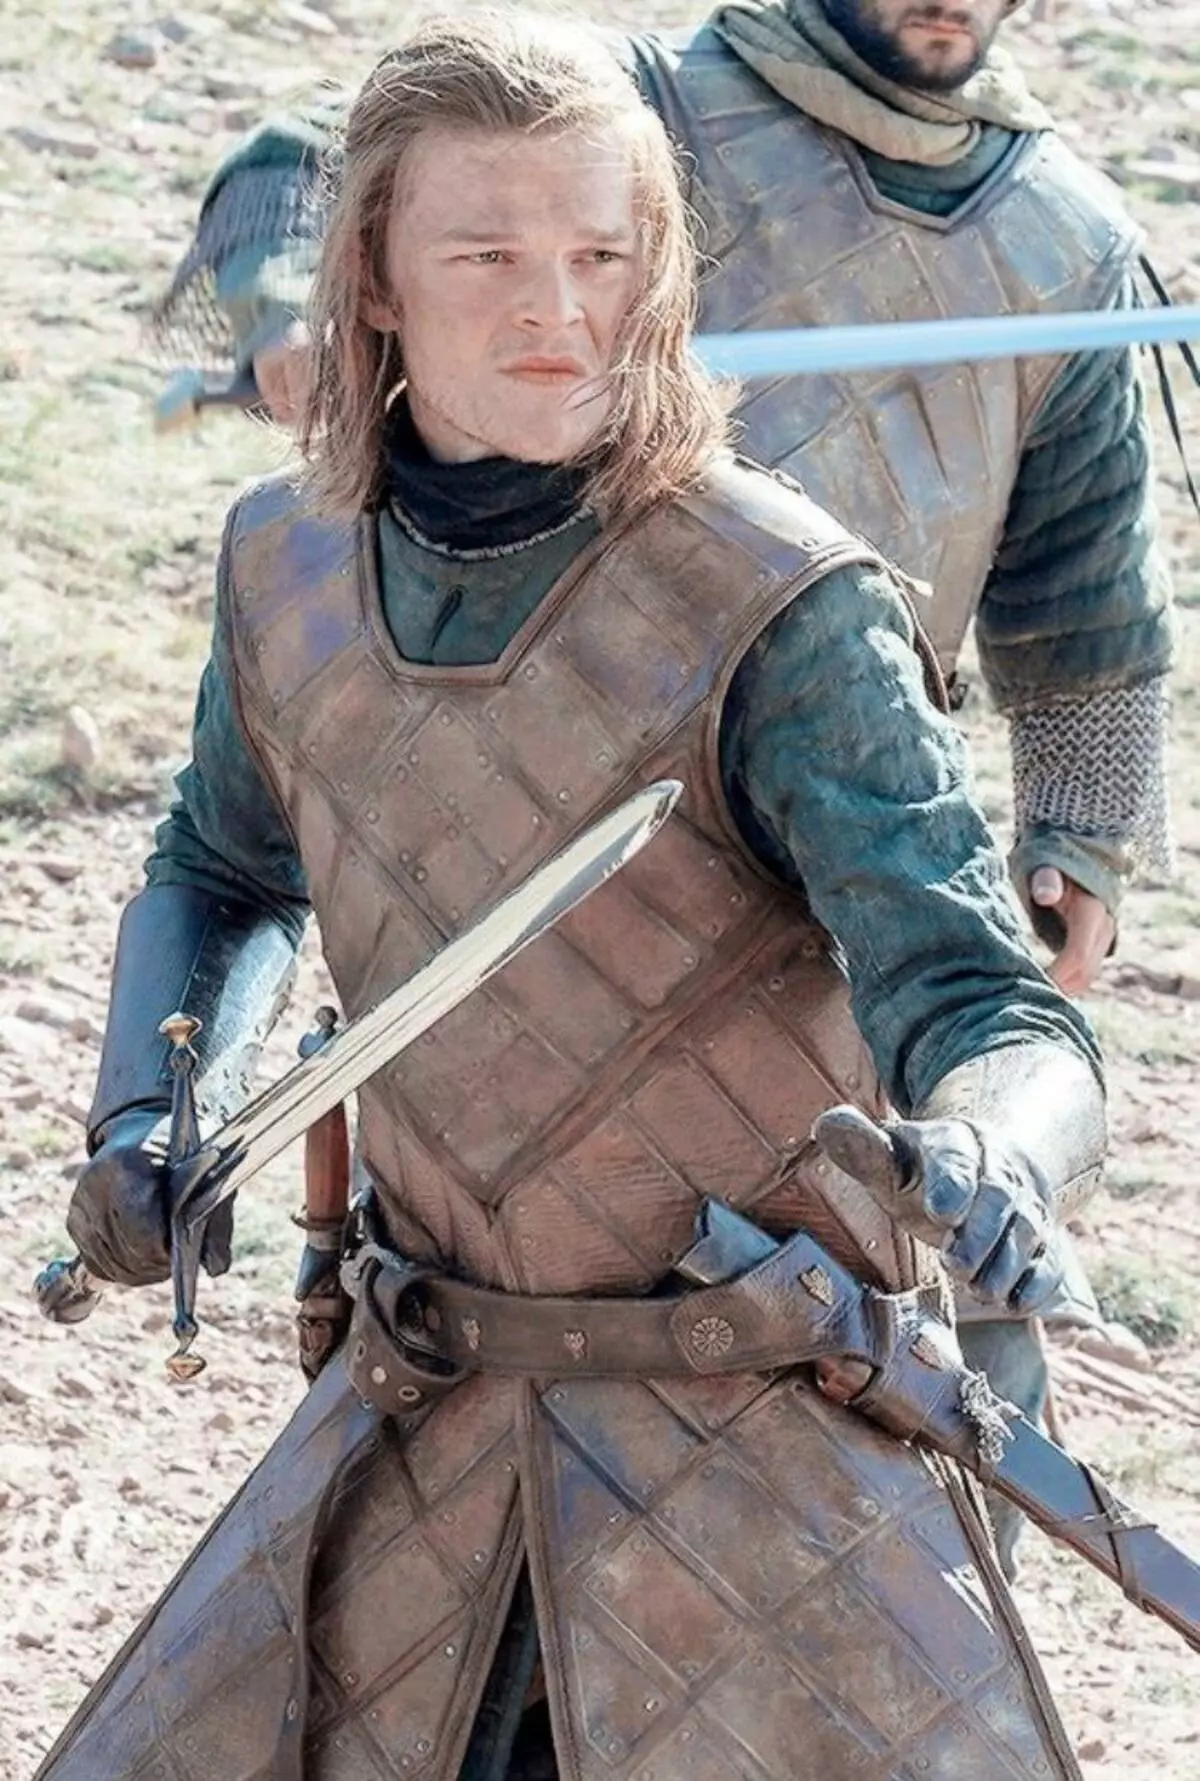 Η οθόνη Eddard STARK θα παίξει έναν από τους κύριους χαρακτήρες της τηλεοπτικής σειράς 